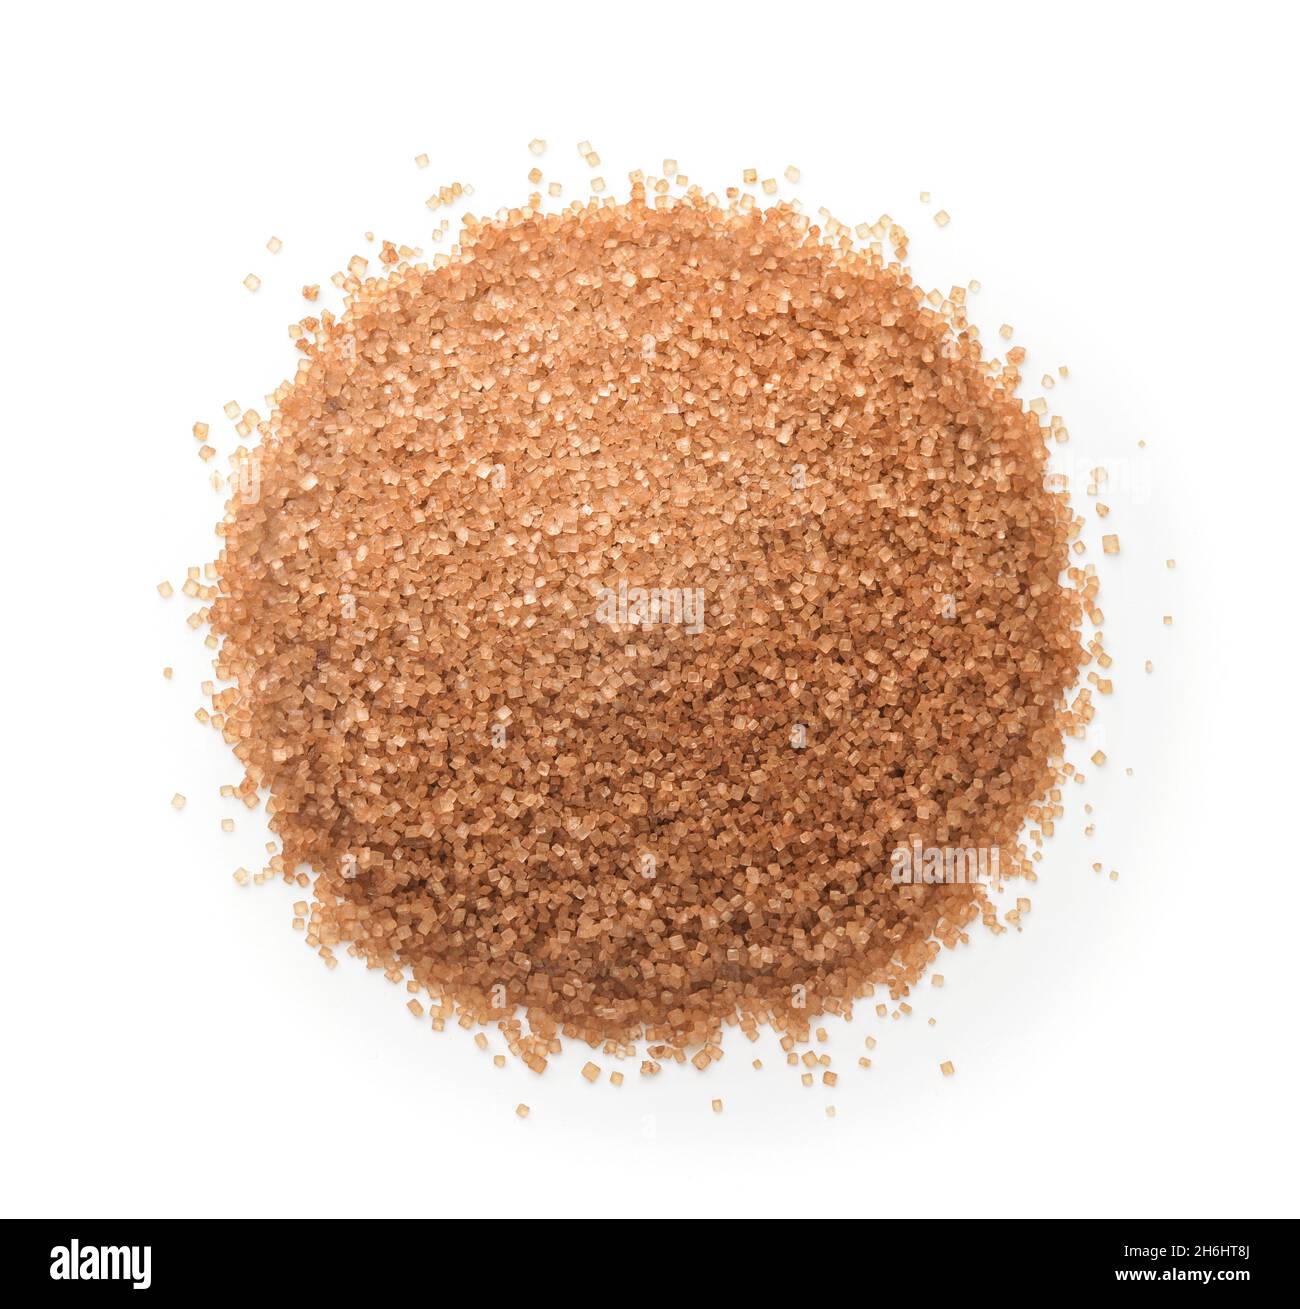 Vue de dessus du sucre brun granulé naturel isolé sur blanc Banque D'Images